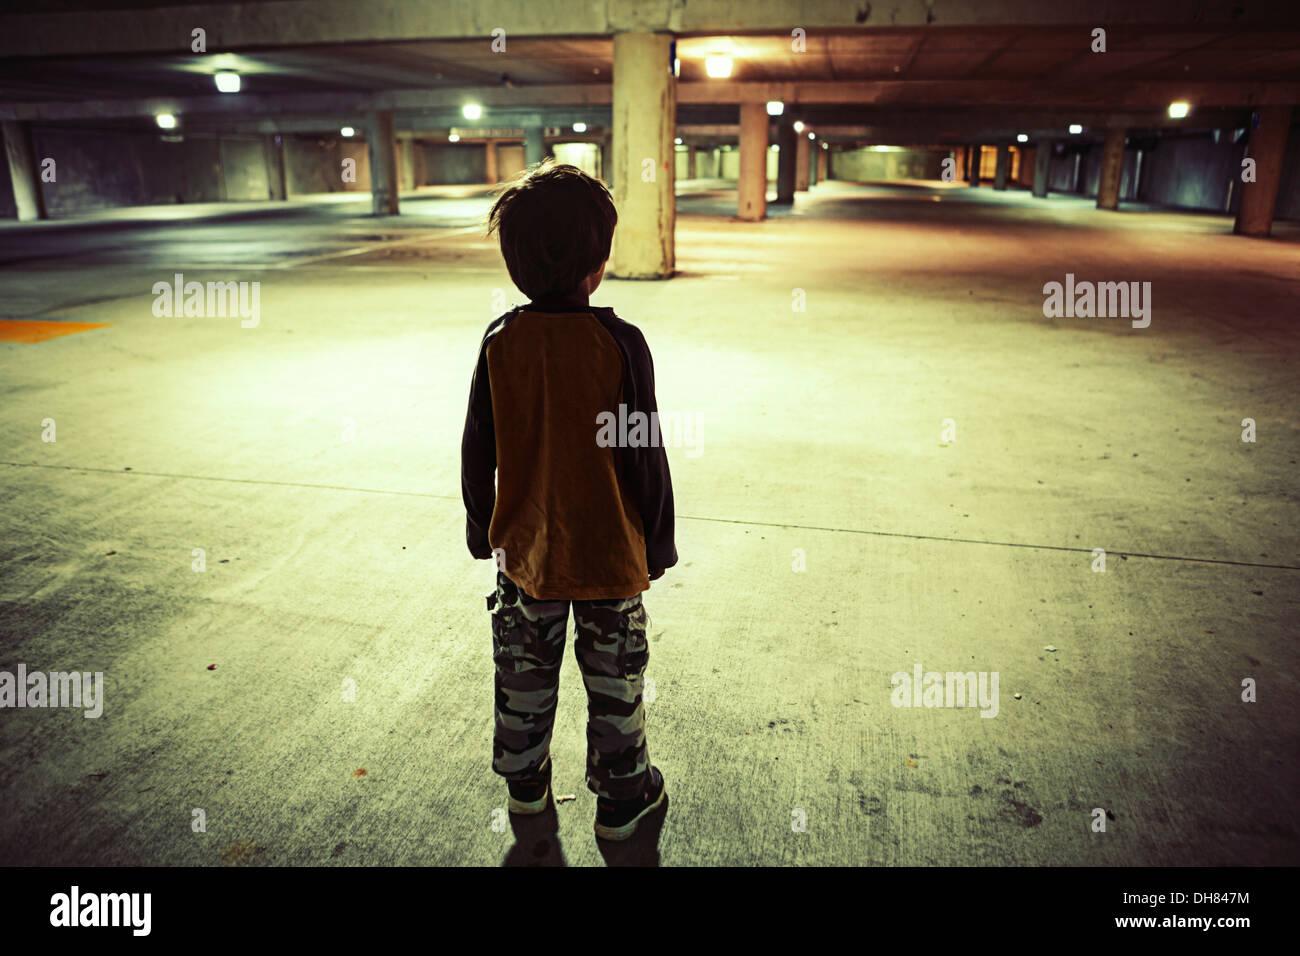 Boy in underground car park Stock Photo